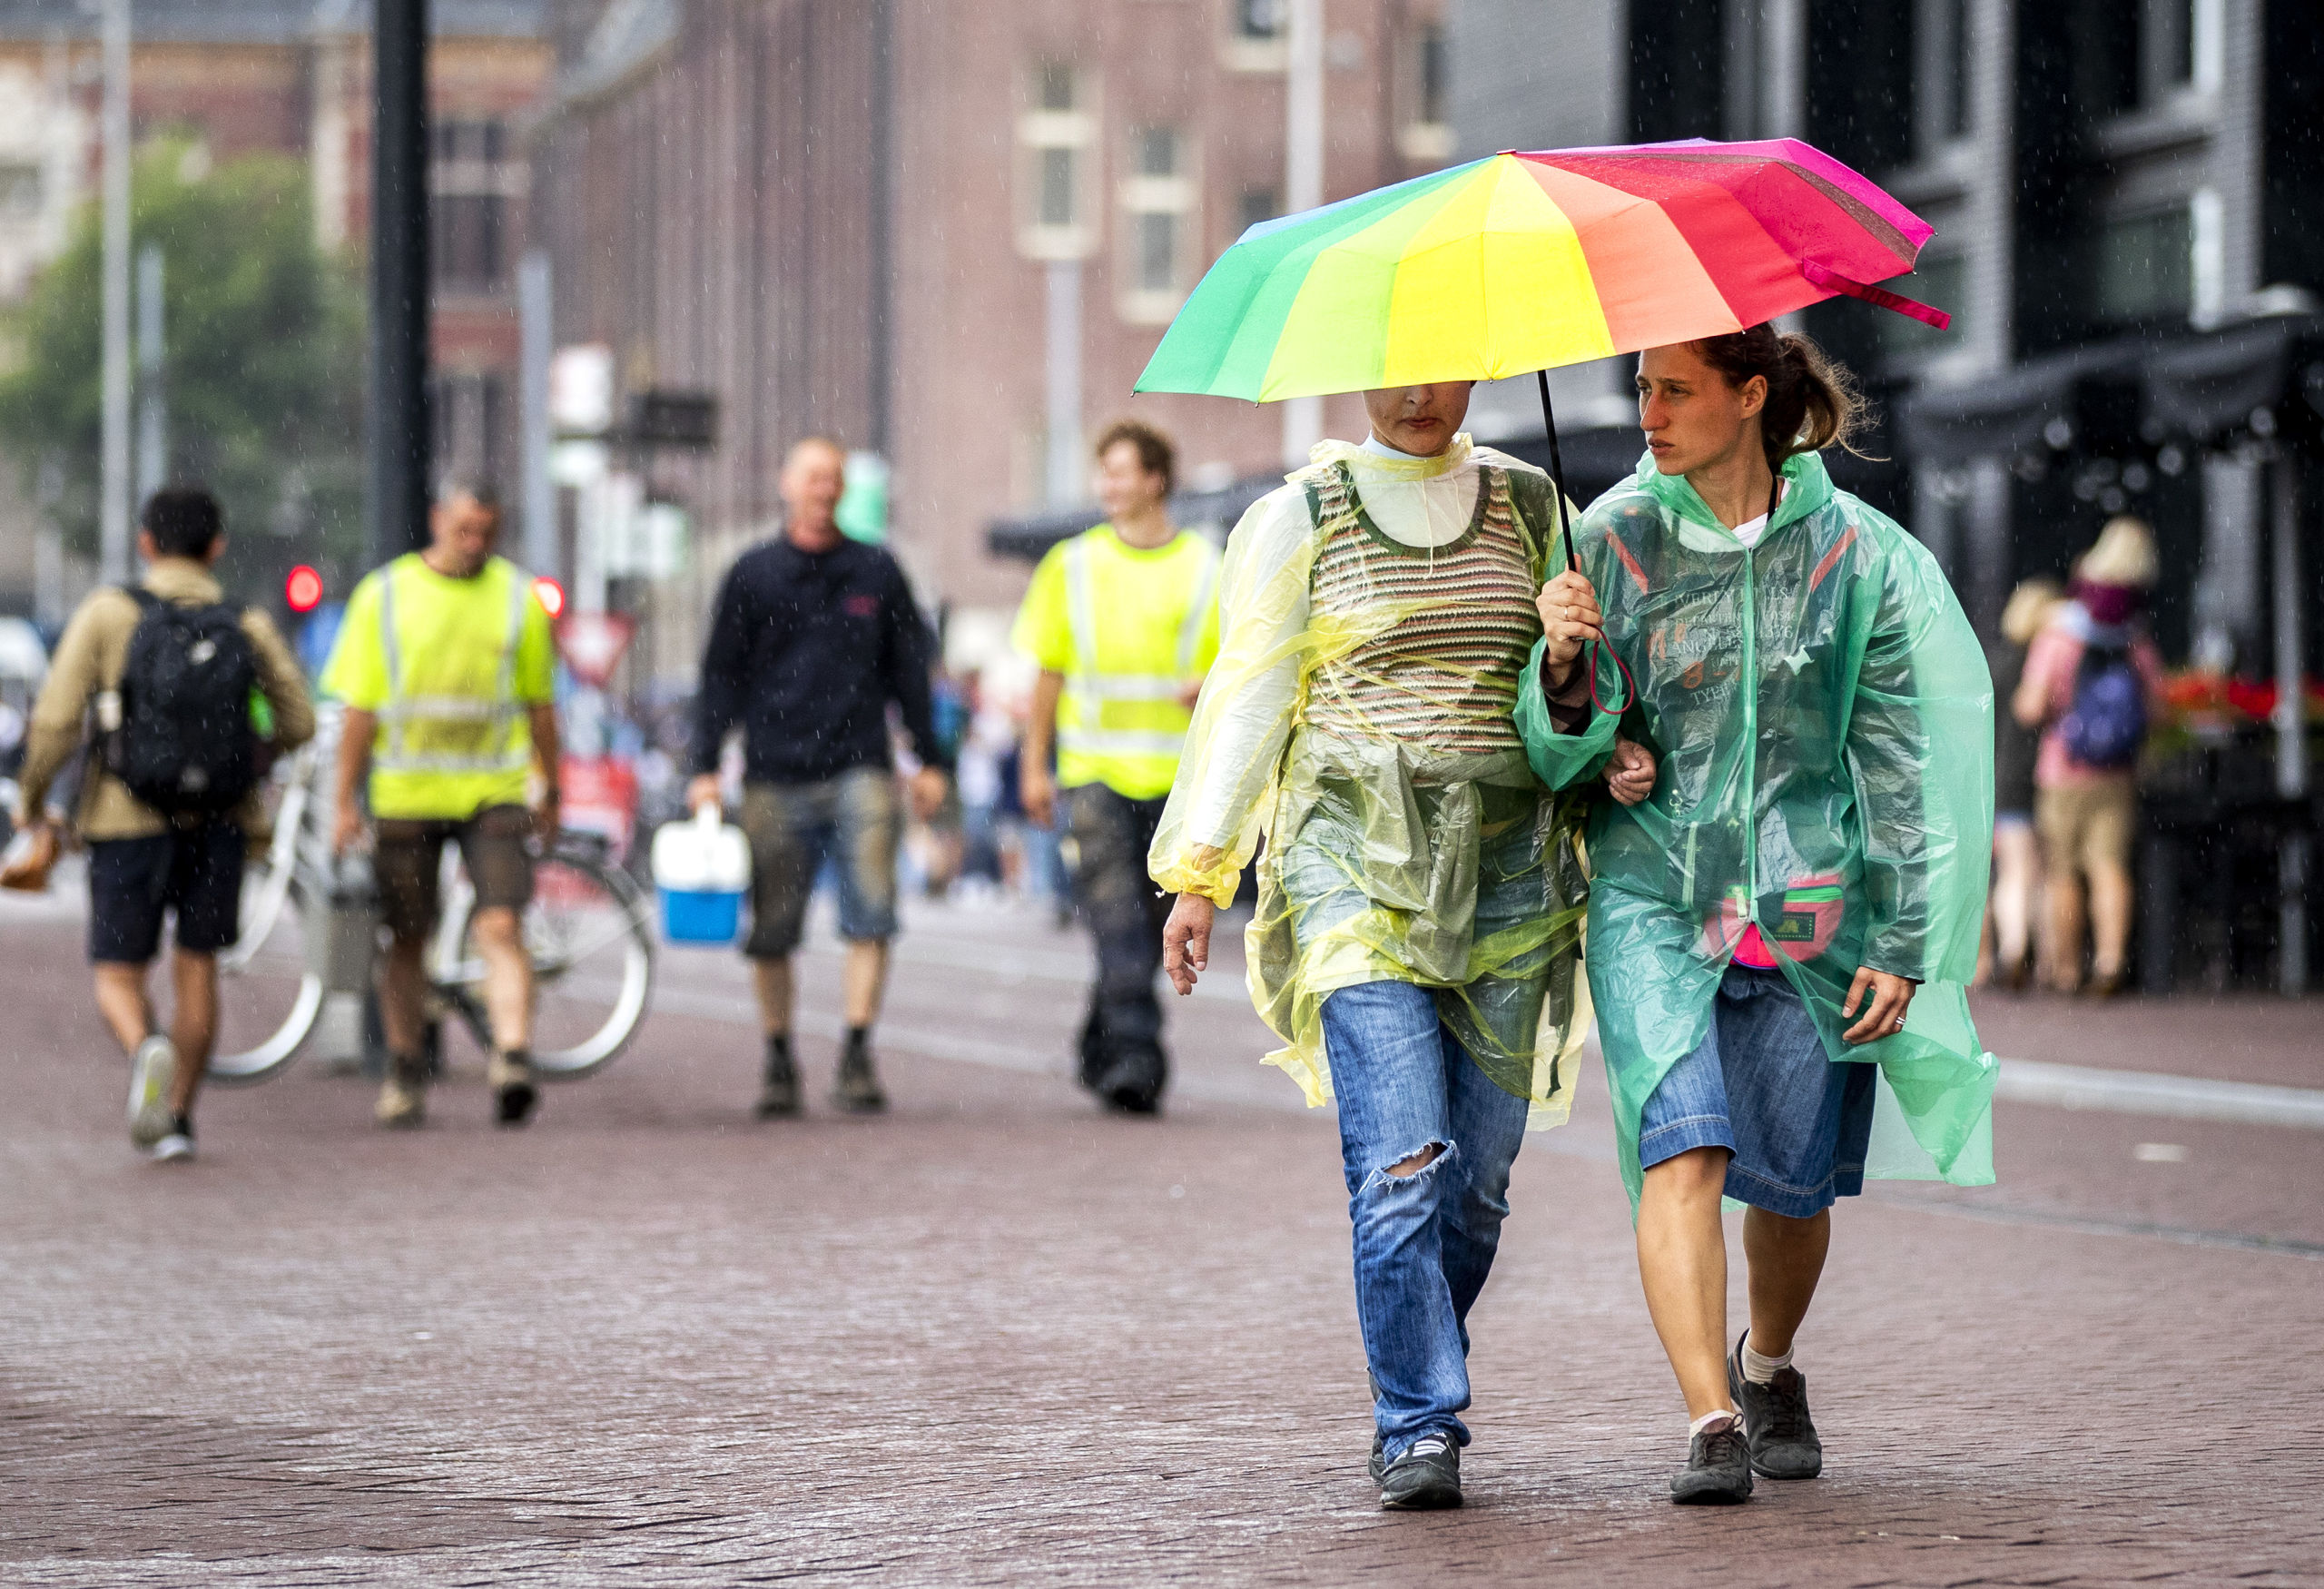 2018-08-09 15:31:47 AMSTERDAM - Toeristen en Amsterdammers in de regen. Na een lange periode van droog weer valt er op veel plaatsen veel regen. ANP REMKO DE WAAL